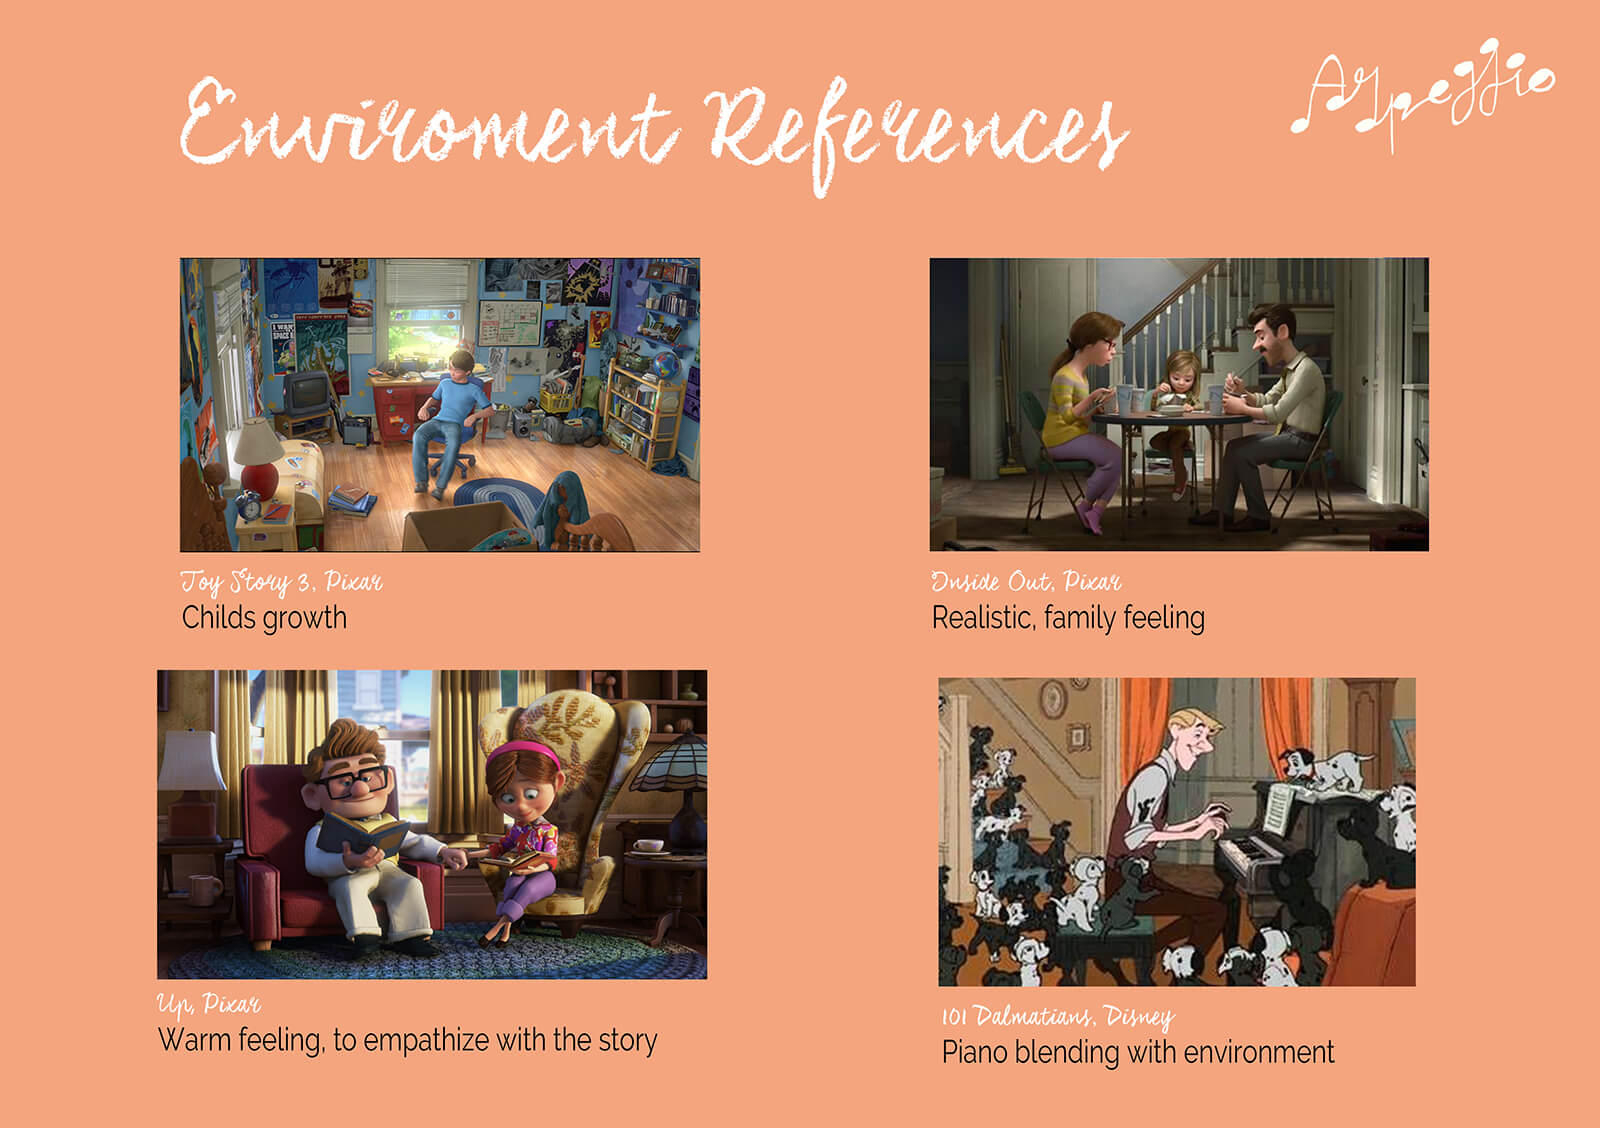 Referencias para el ambiente deseado del cortometraje Arpeggio, que incluye imágenes de Toy Story 3, Inside Out, Up y 101 Dálmatas.